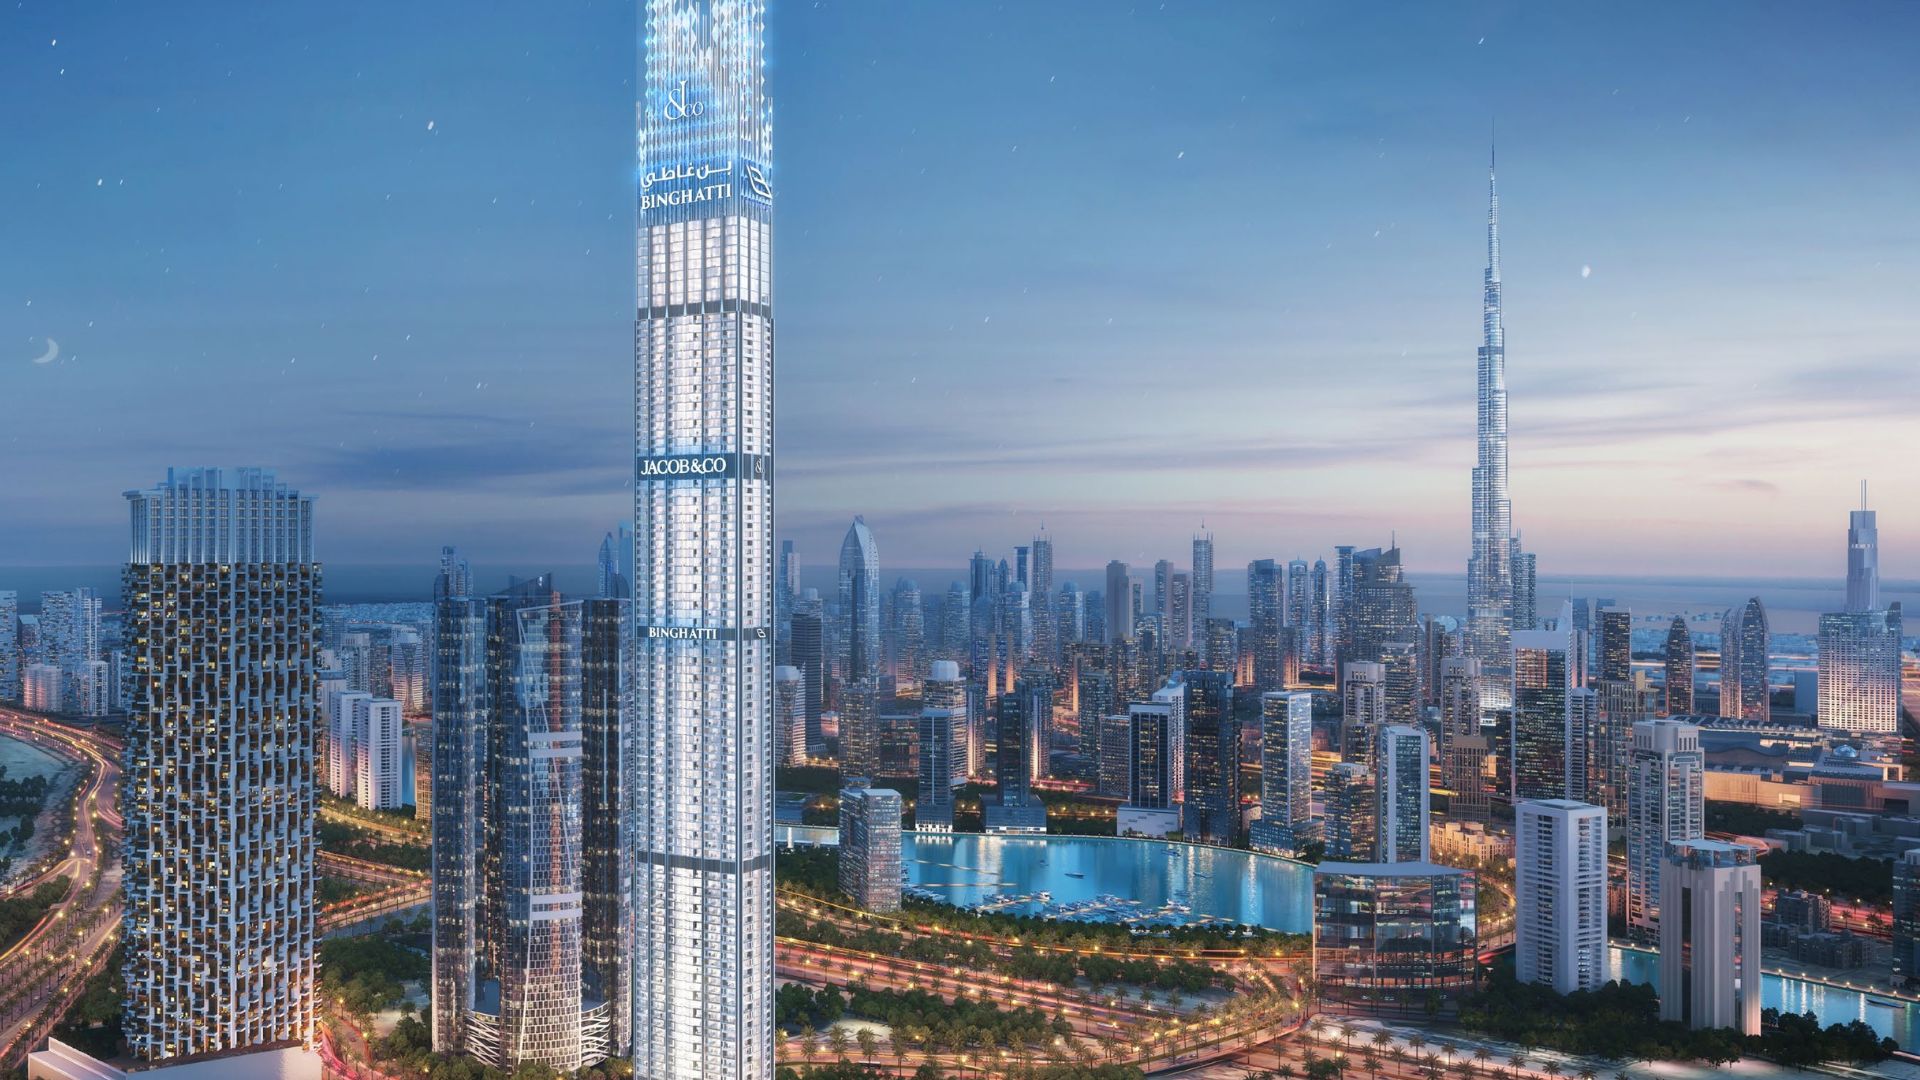 شركة بن غاطي للعقارات تتألق في سماء دبي بأجود المباني والتصميمات